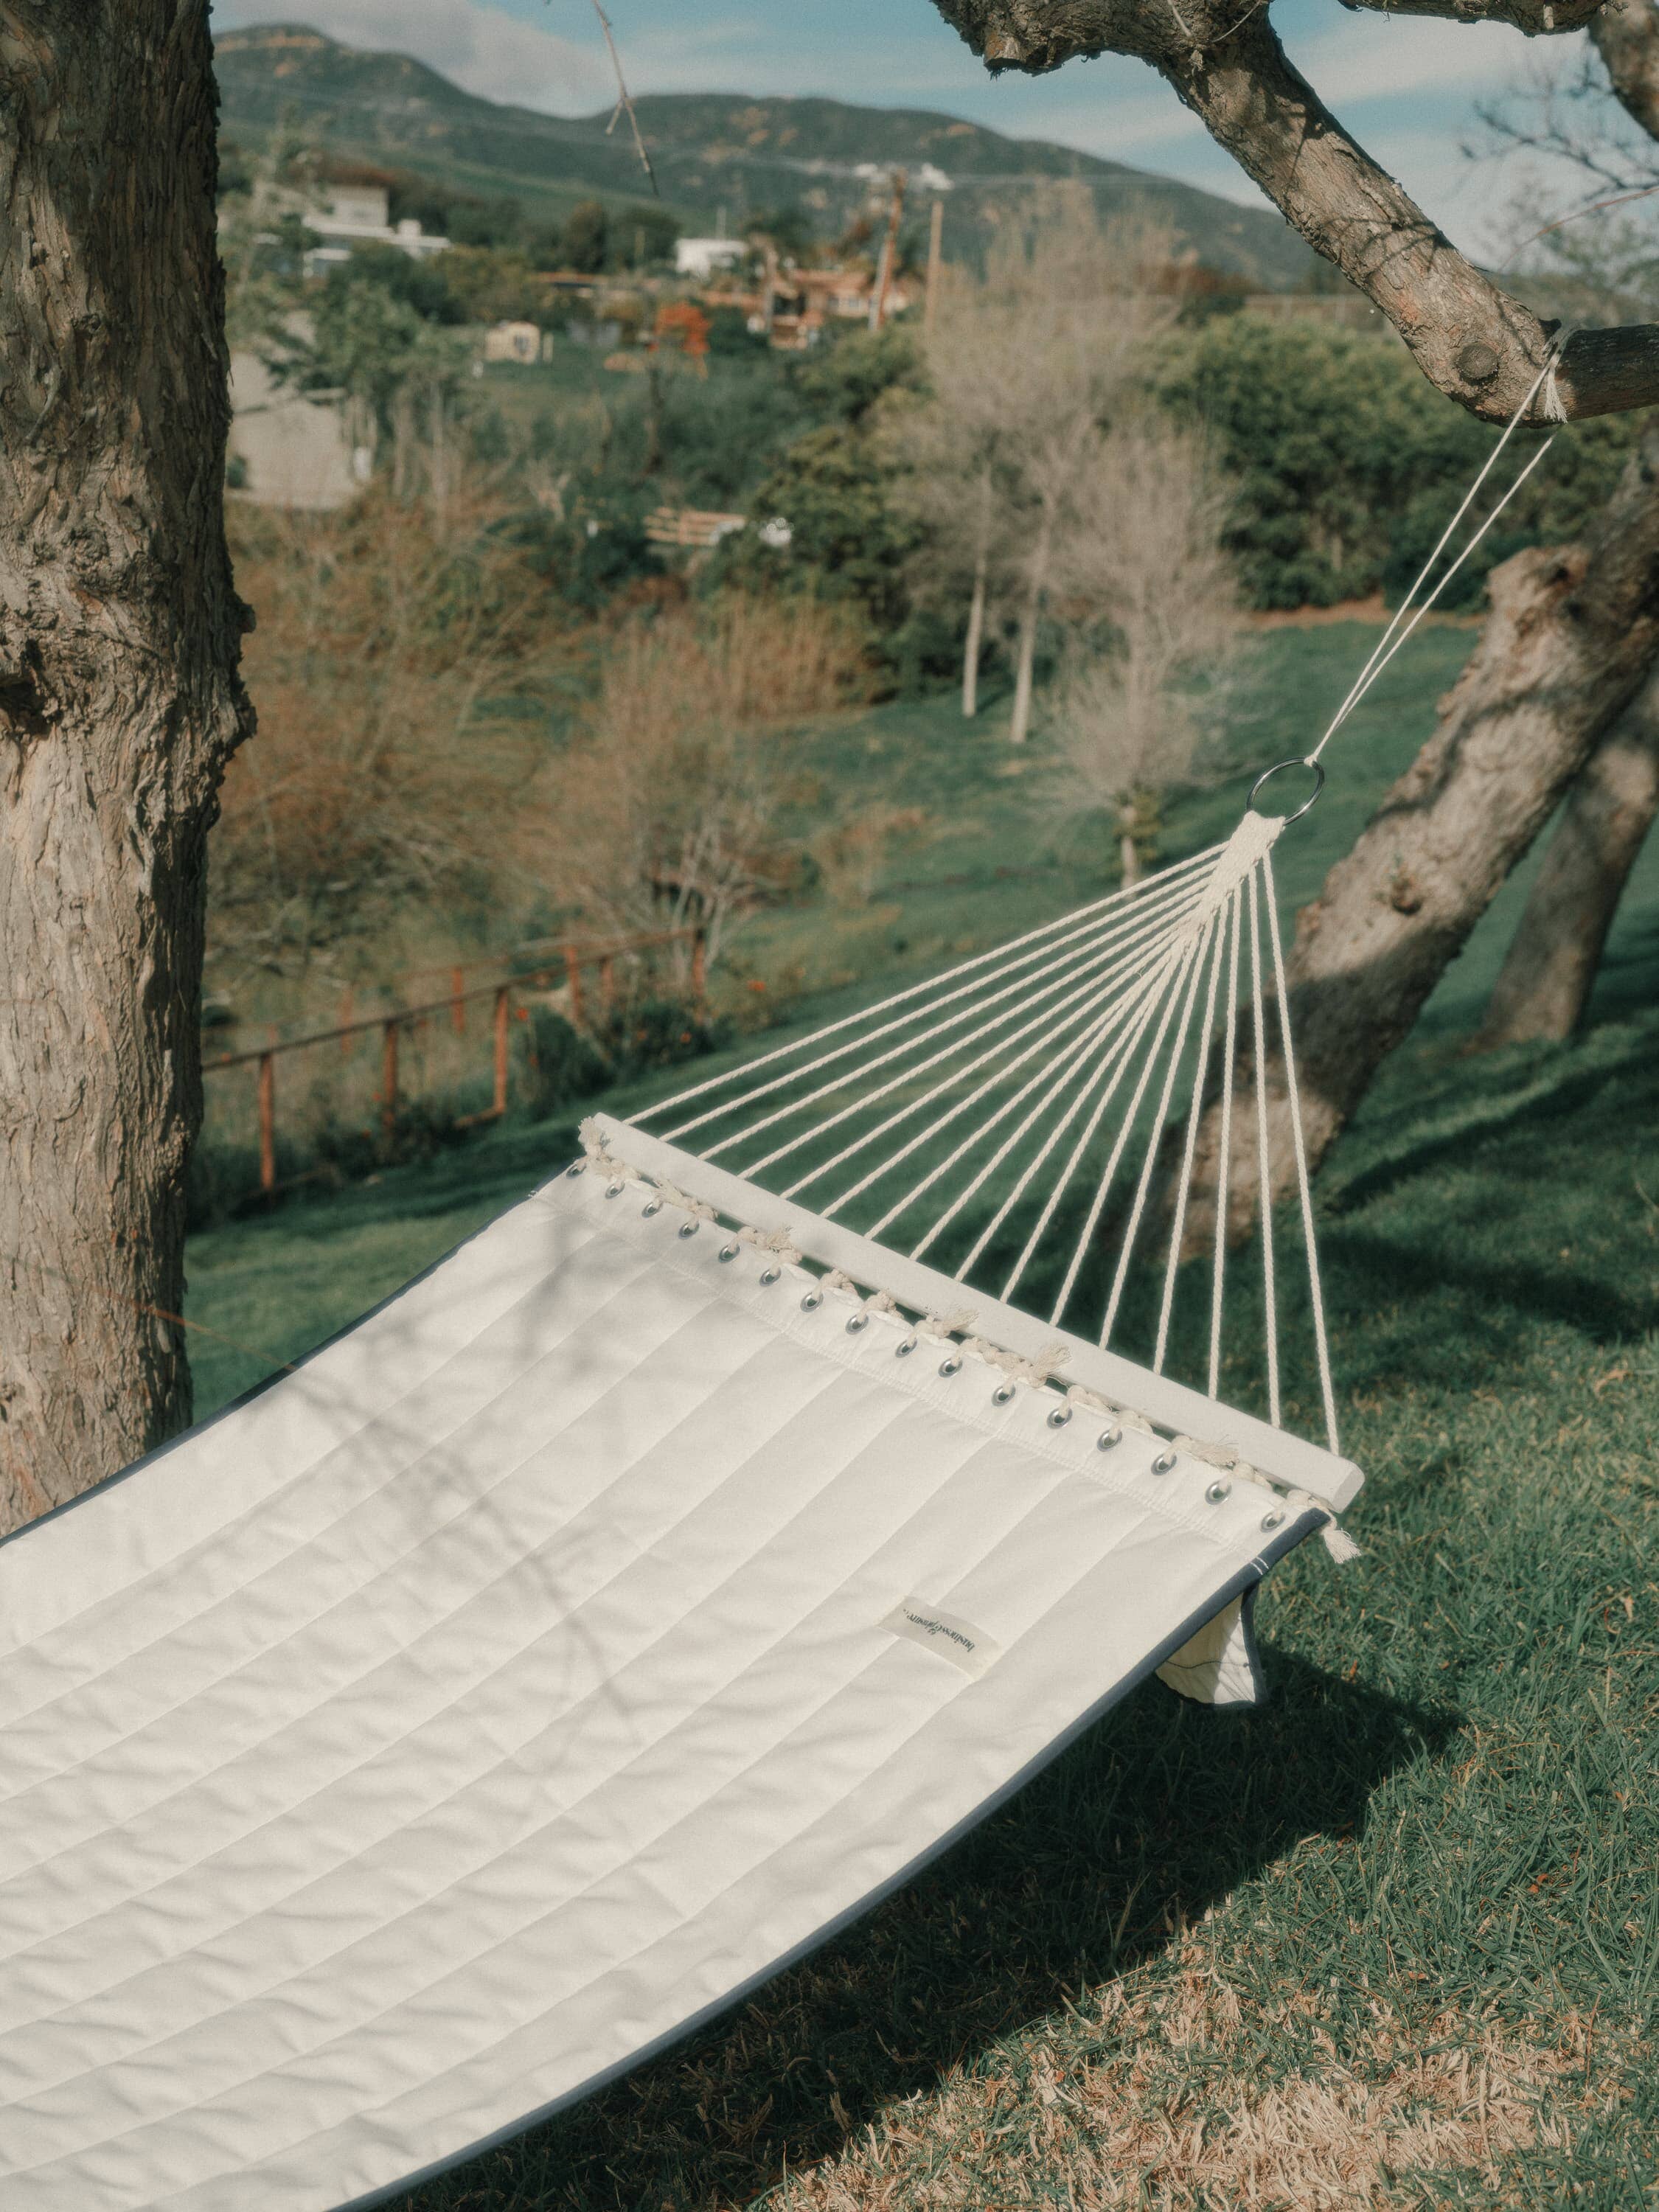 riviera white hammock in a garden